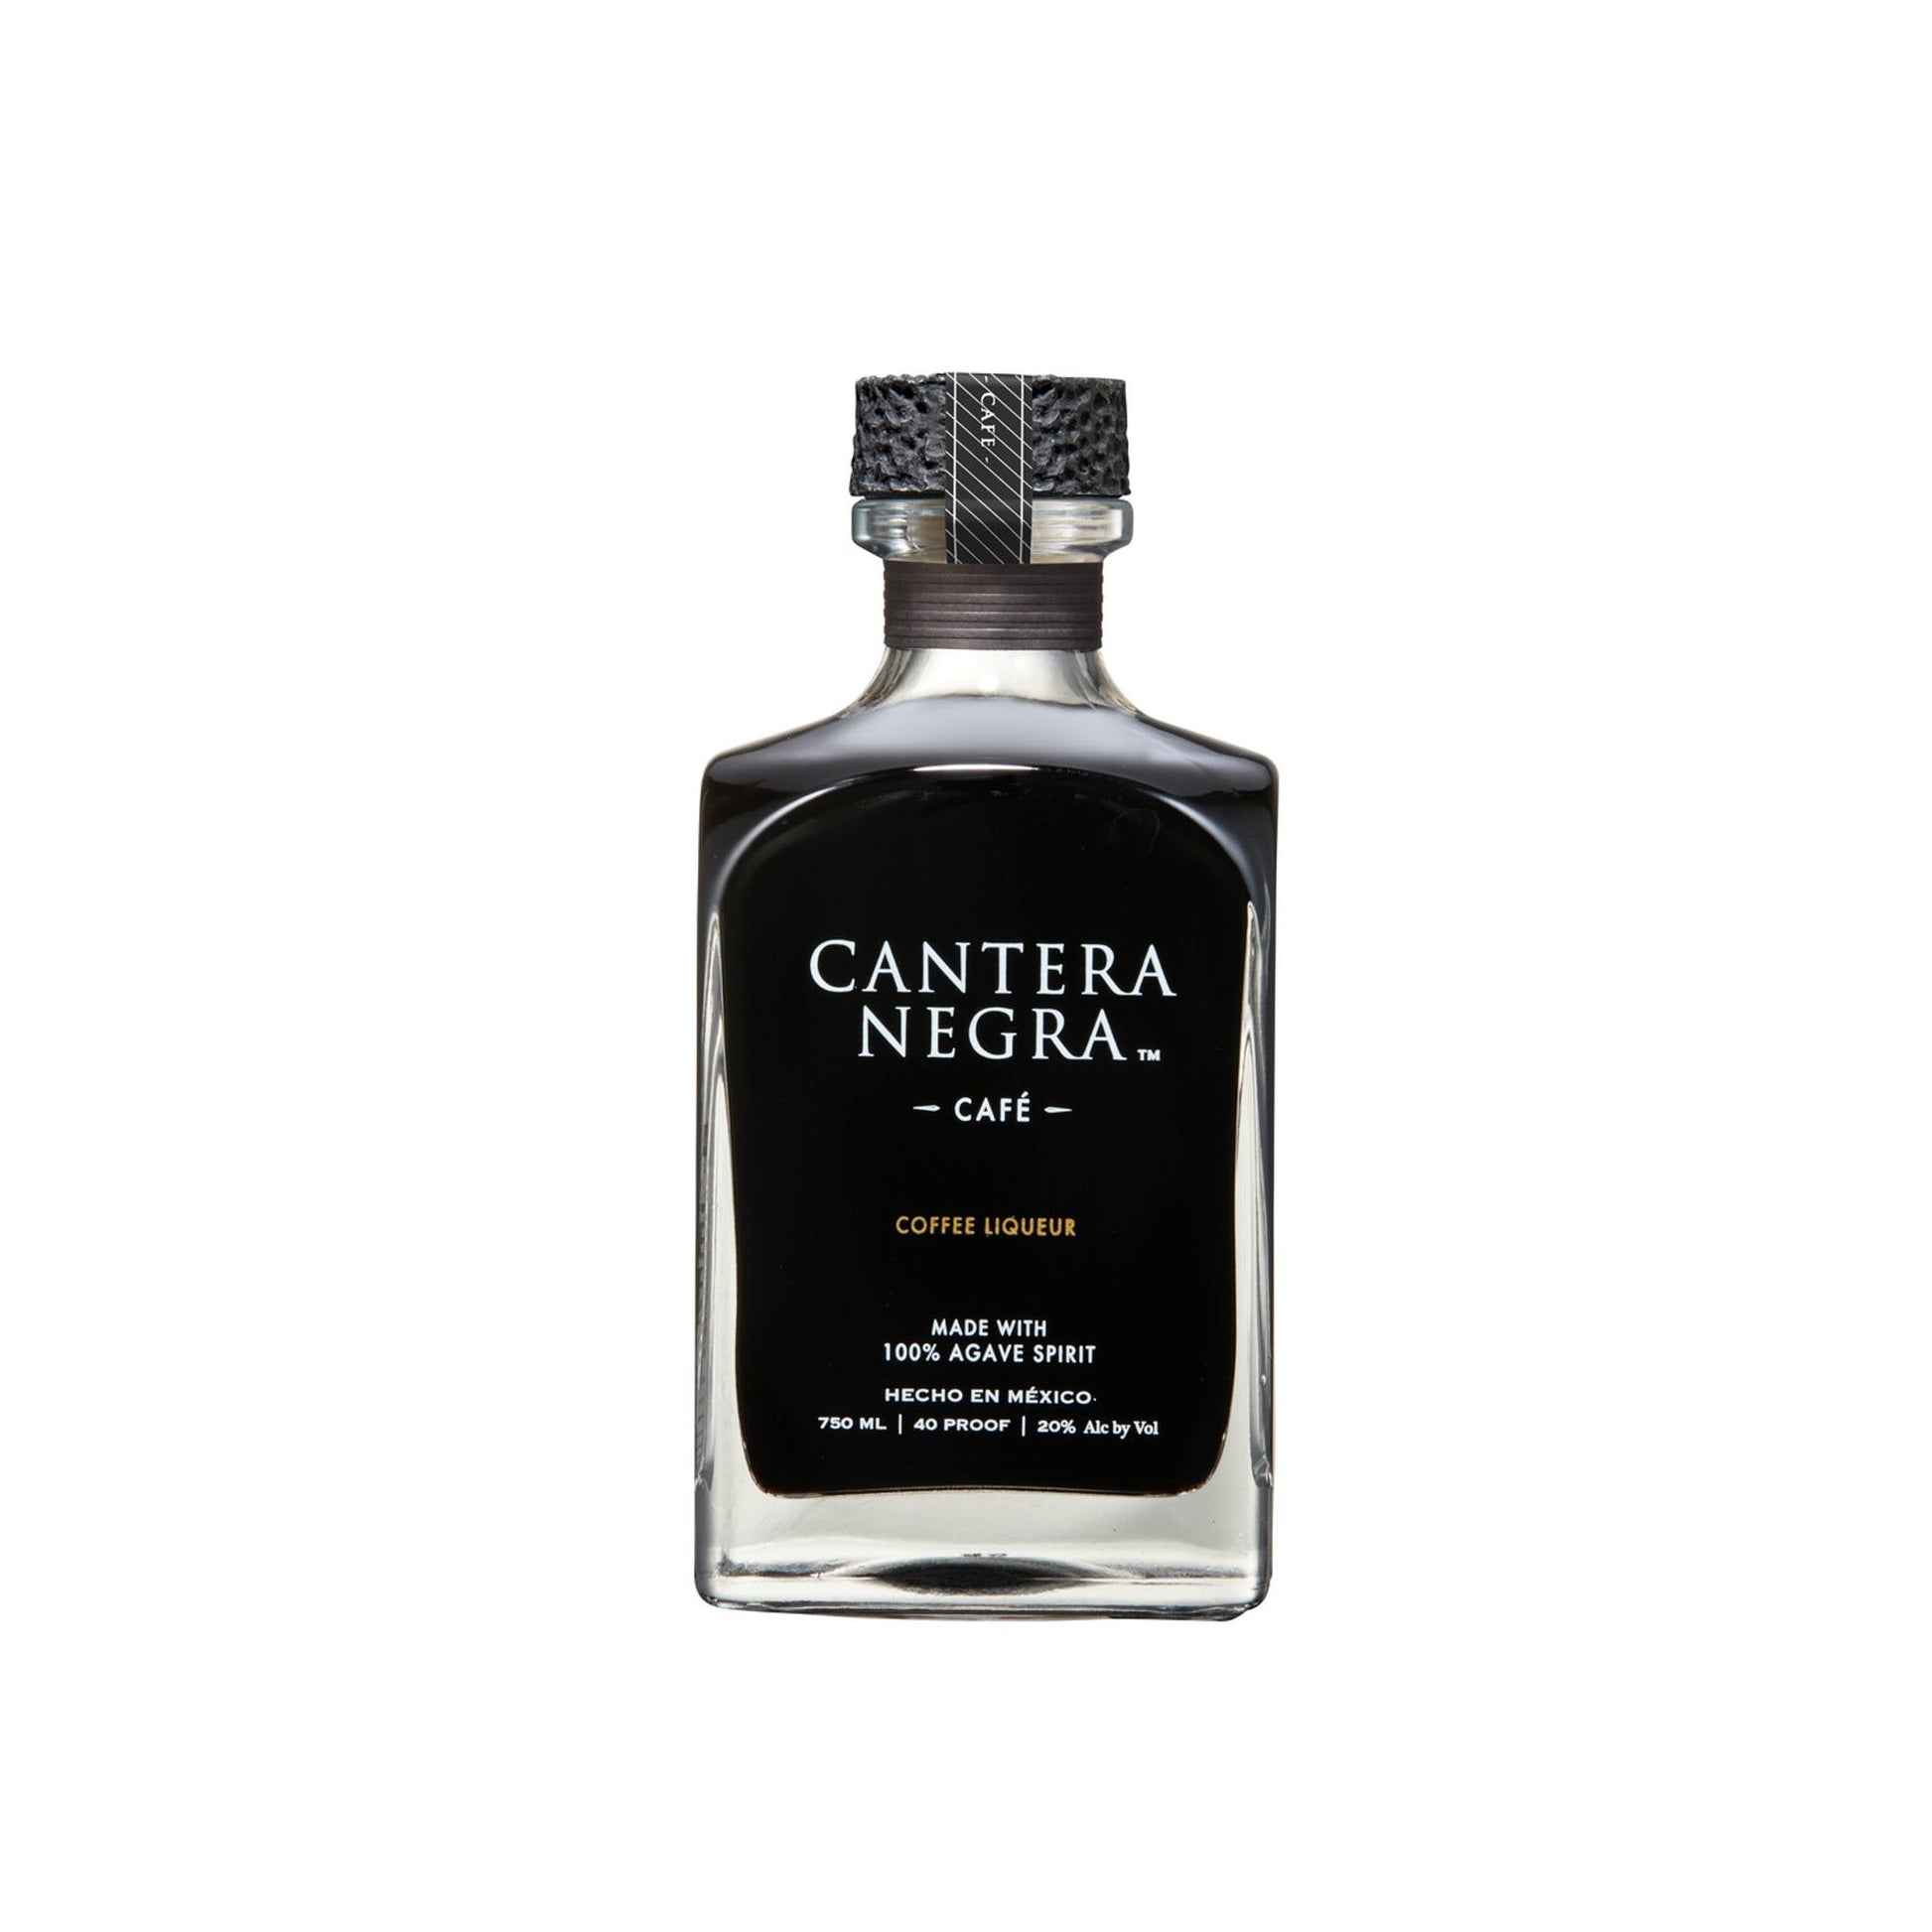 Cantera Negra Coffee Liqueur Cafe - Liquor Geeks